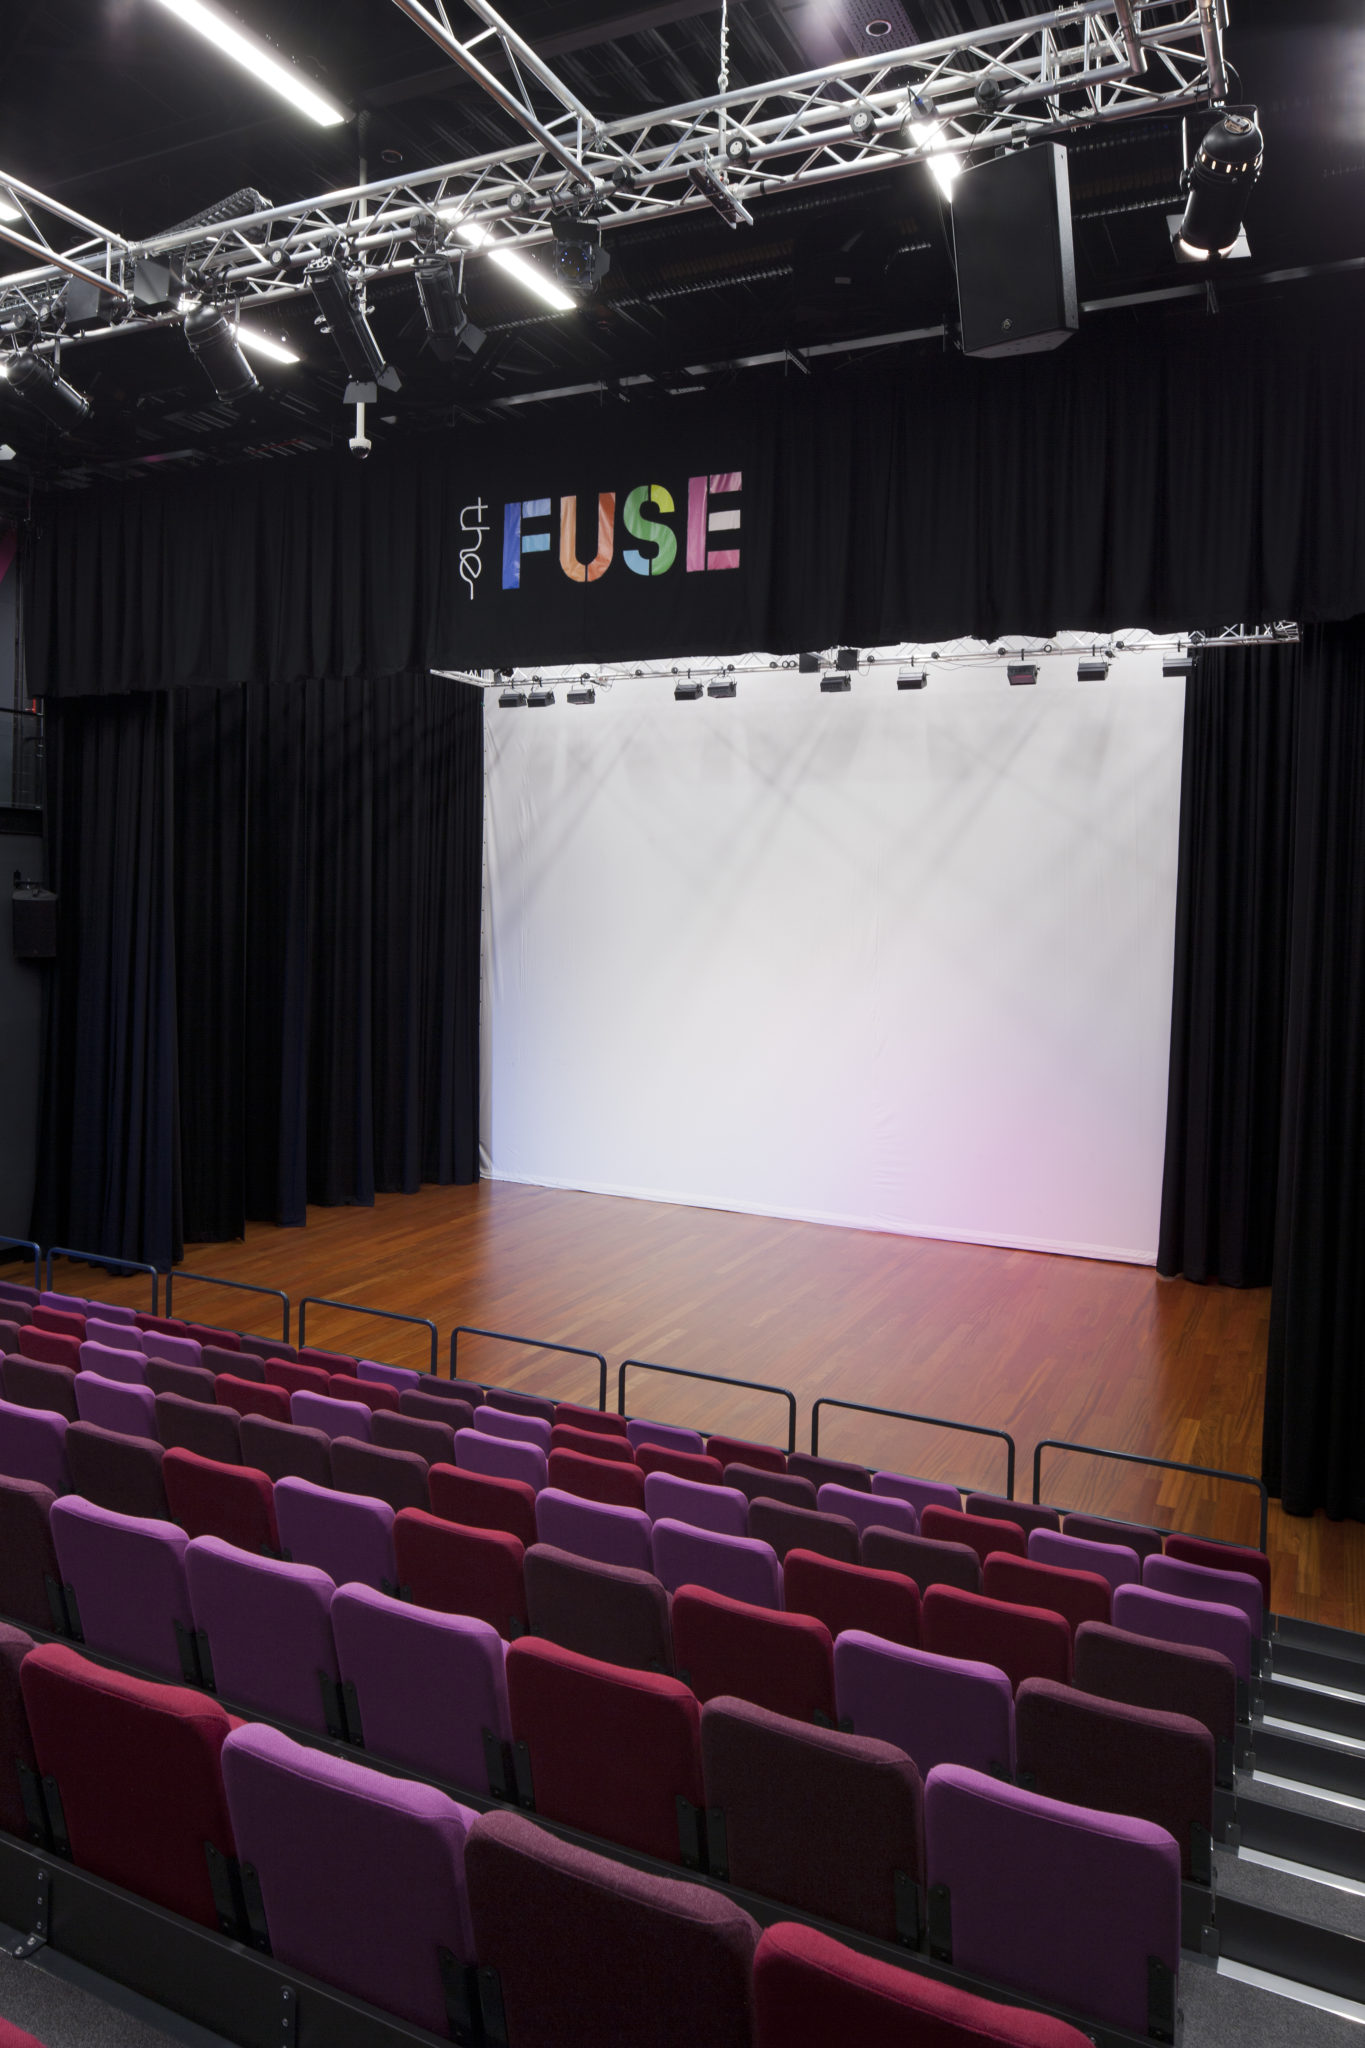 The Fuse theatre